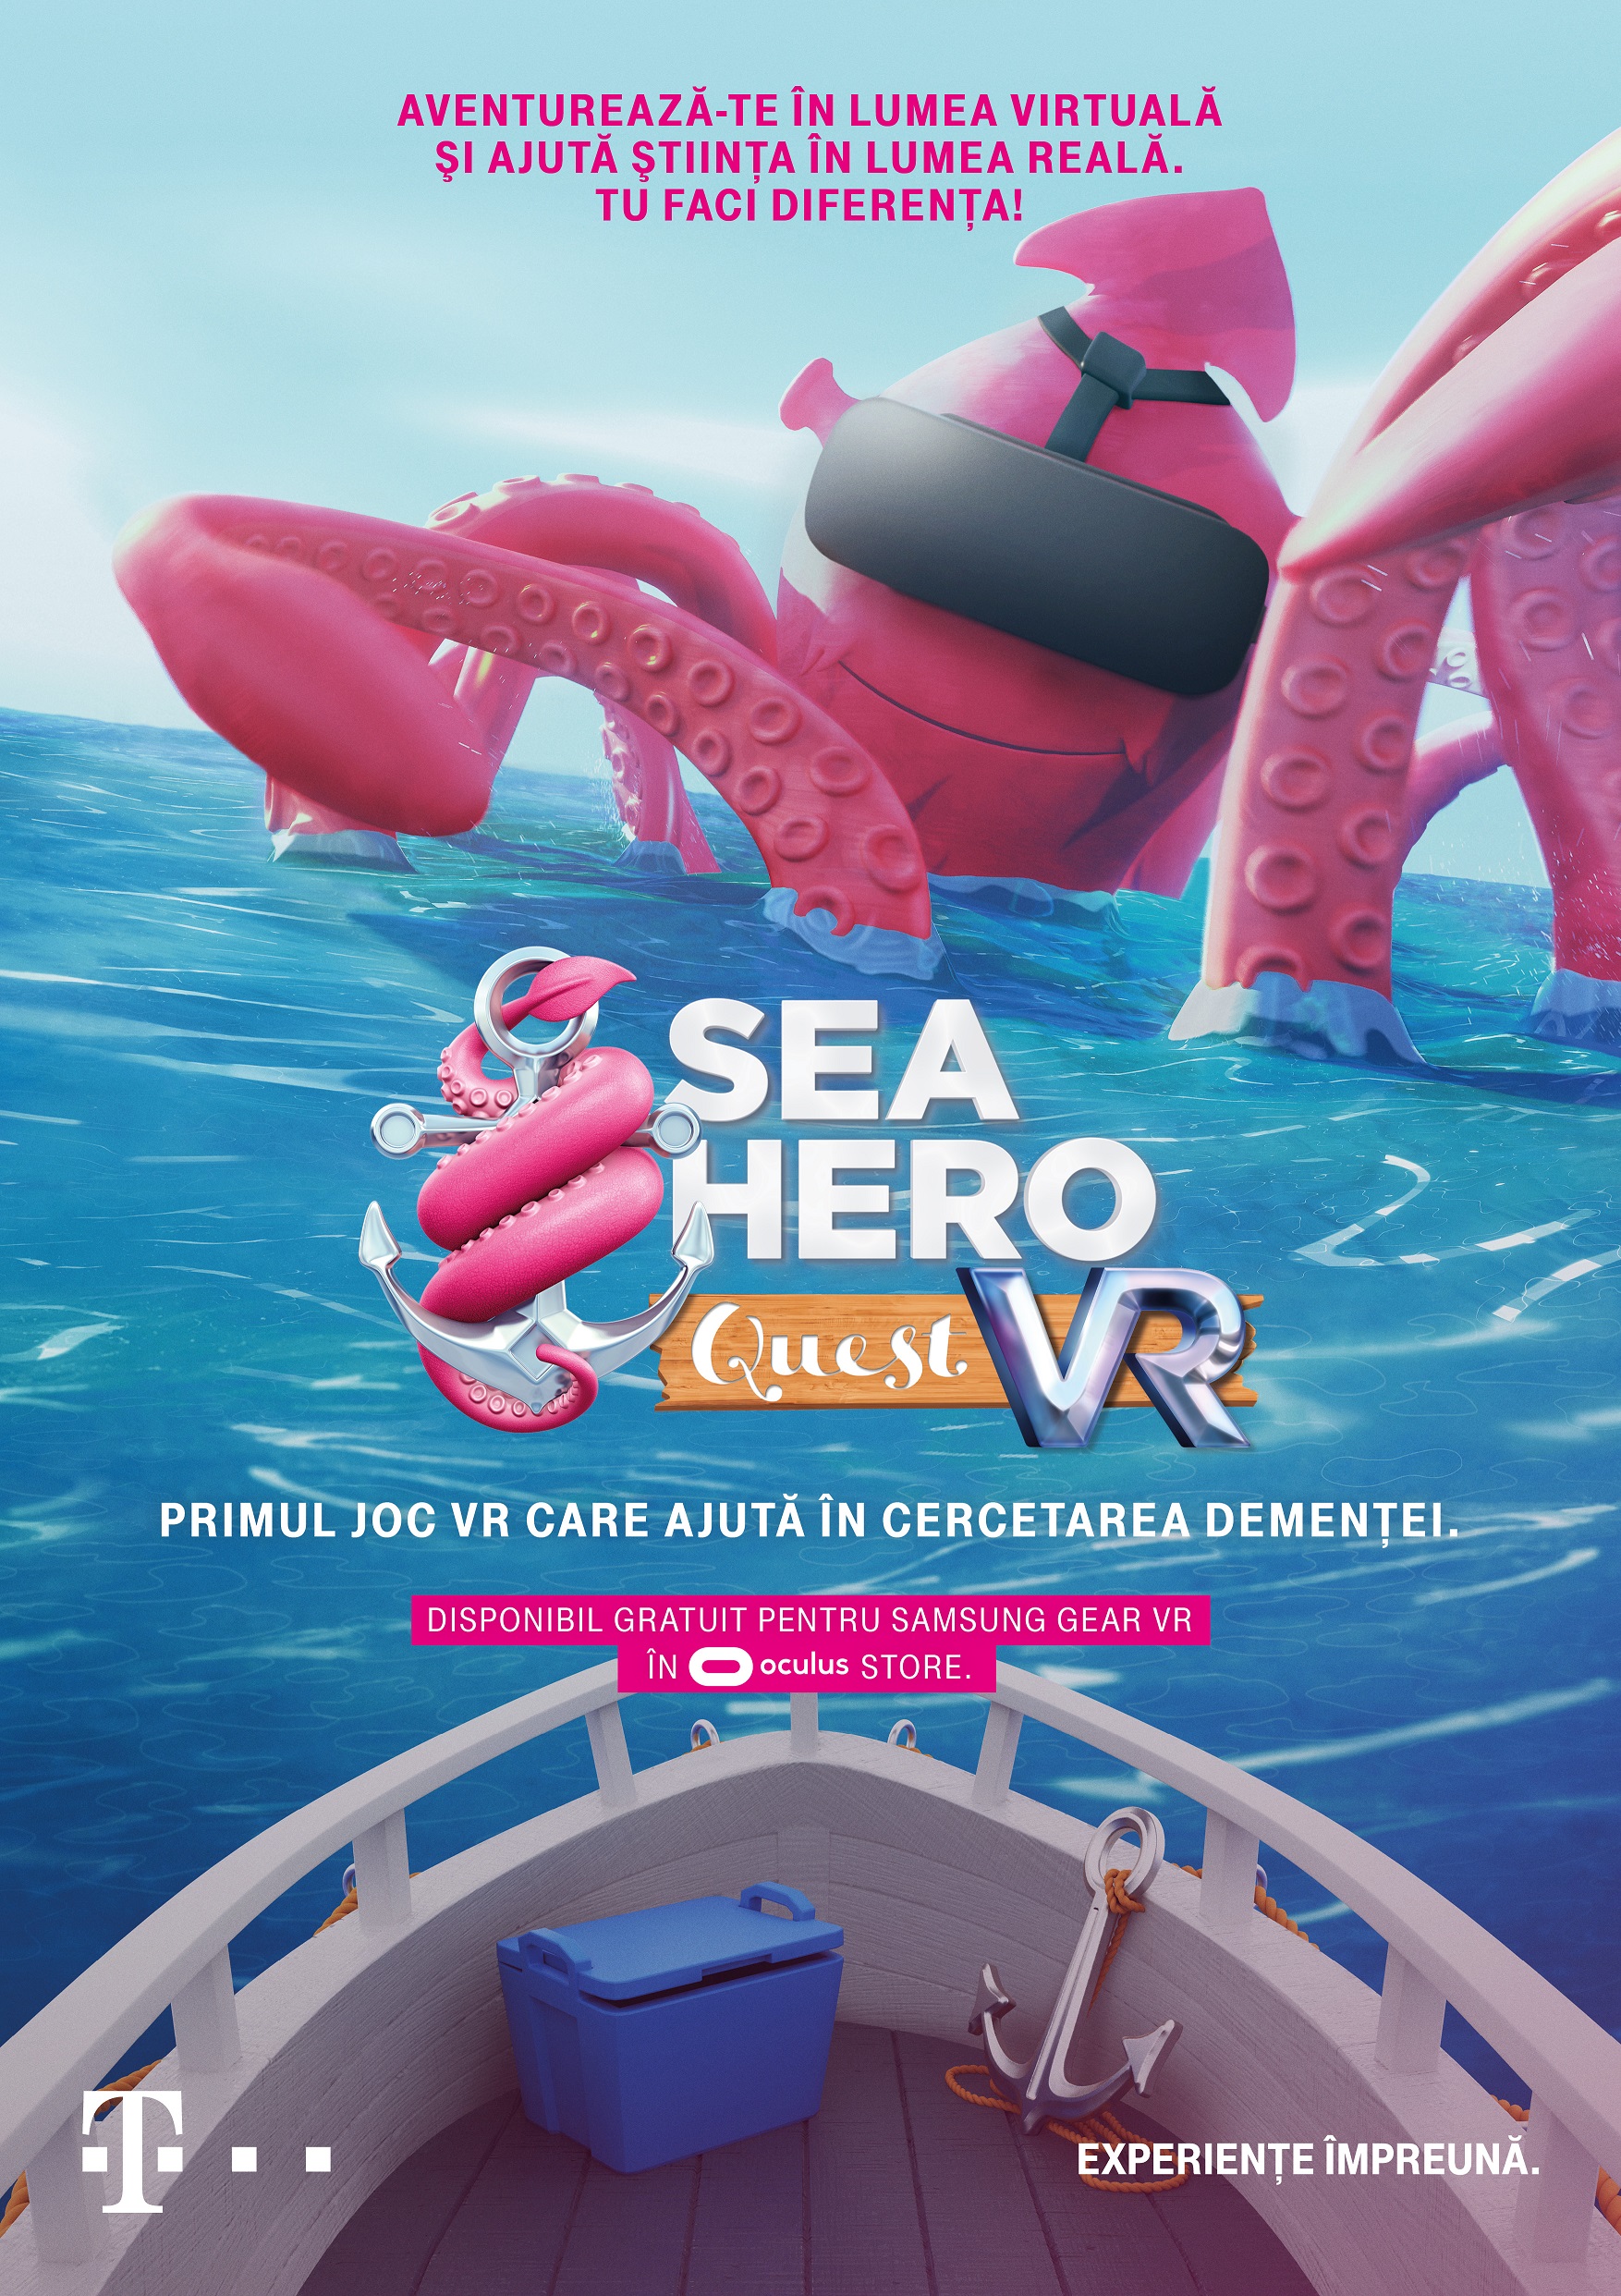 SEA_HERO ro